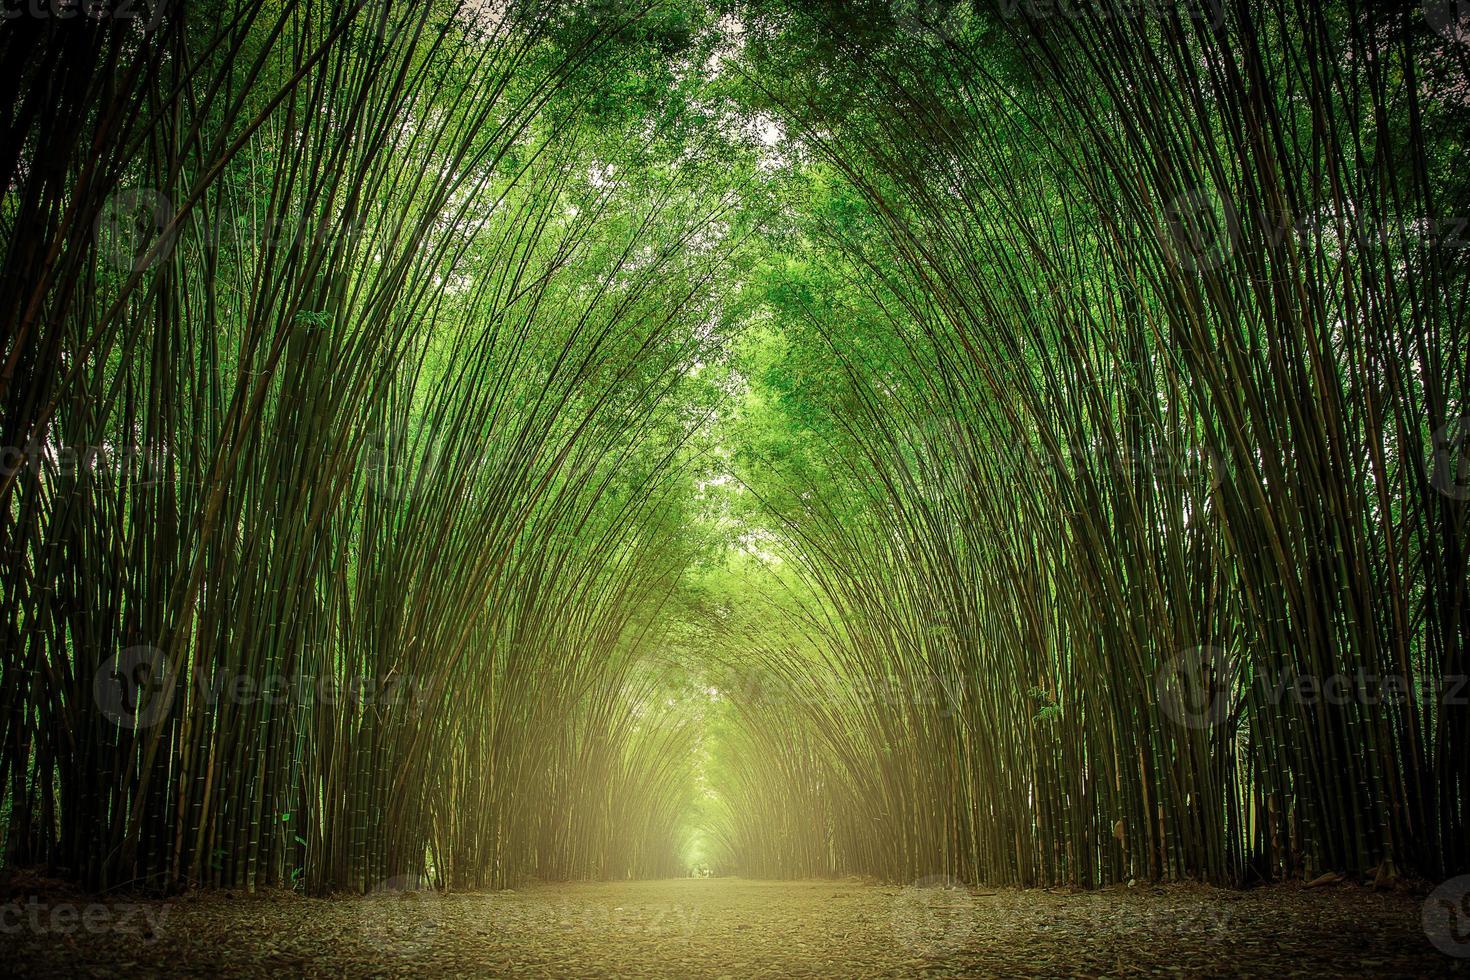 stigen flankerad av två sidor utan bambuskog. foto